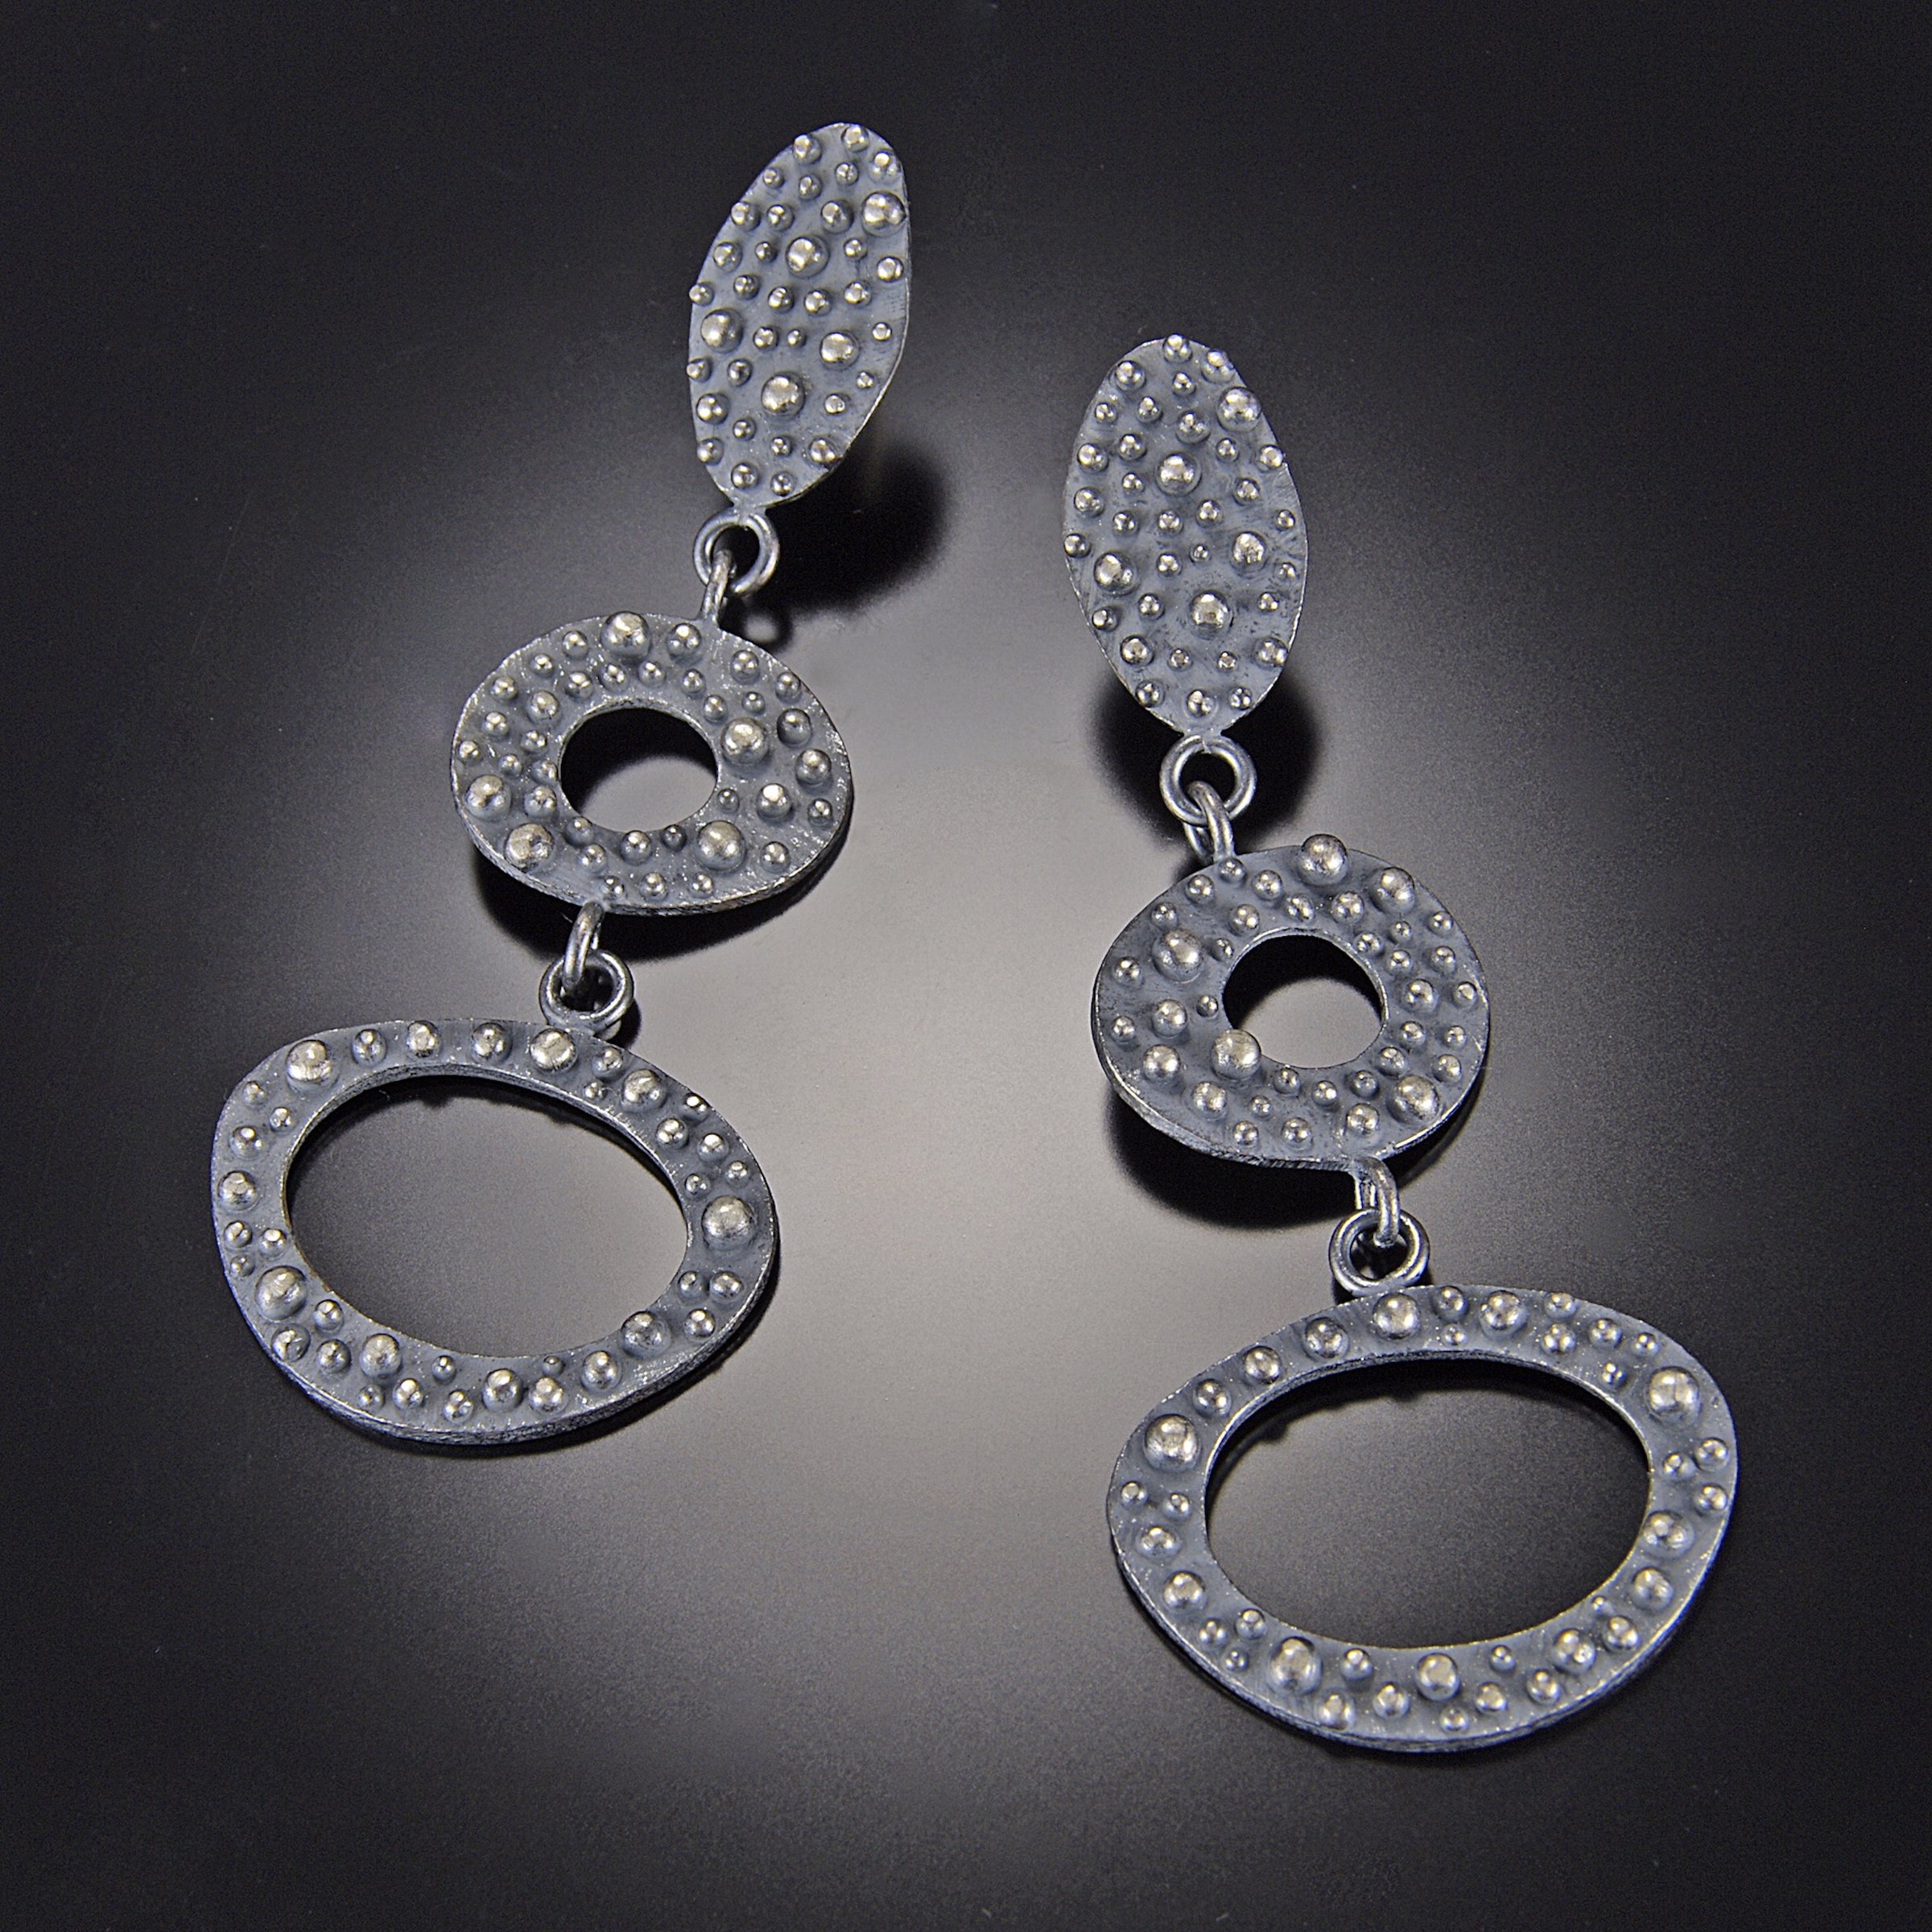 Bumpy Long Three-Tier Earrings by Dahlia Kanner (Silver Earrings